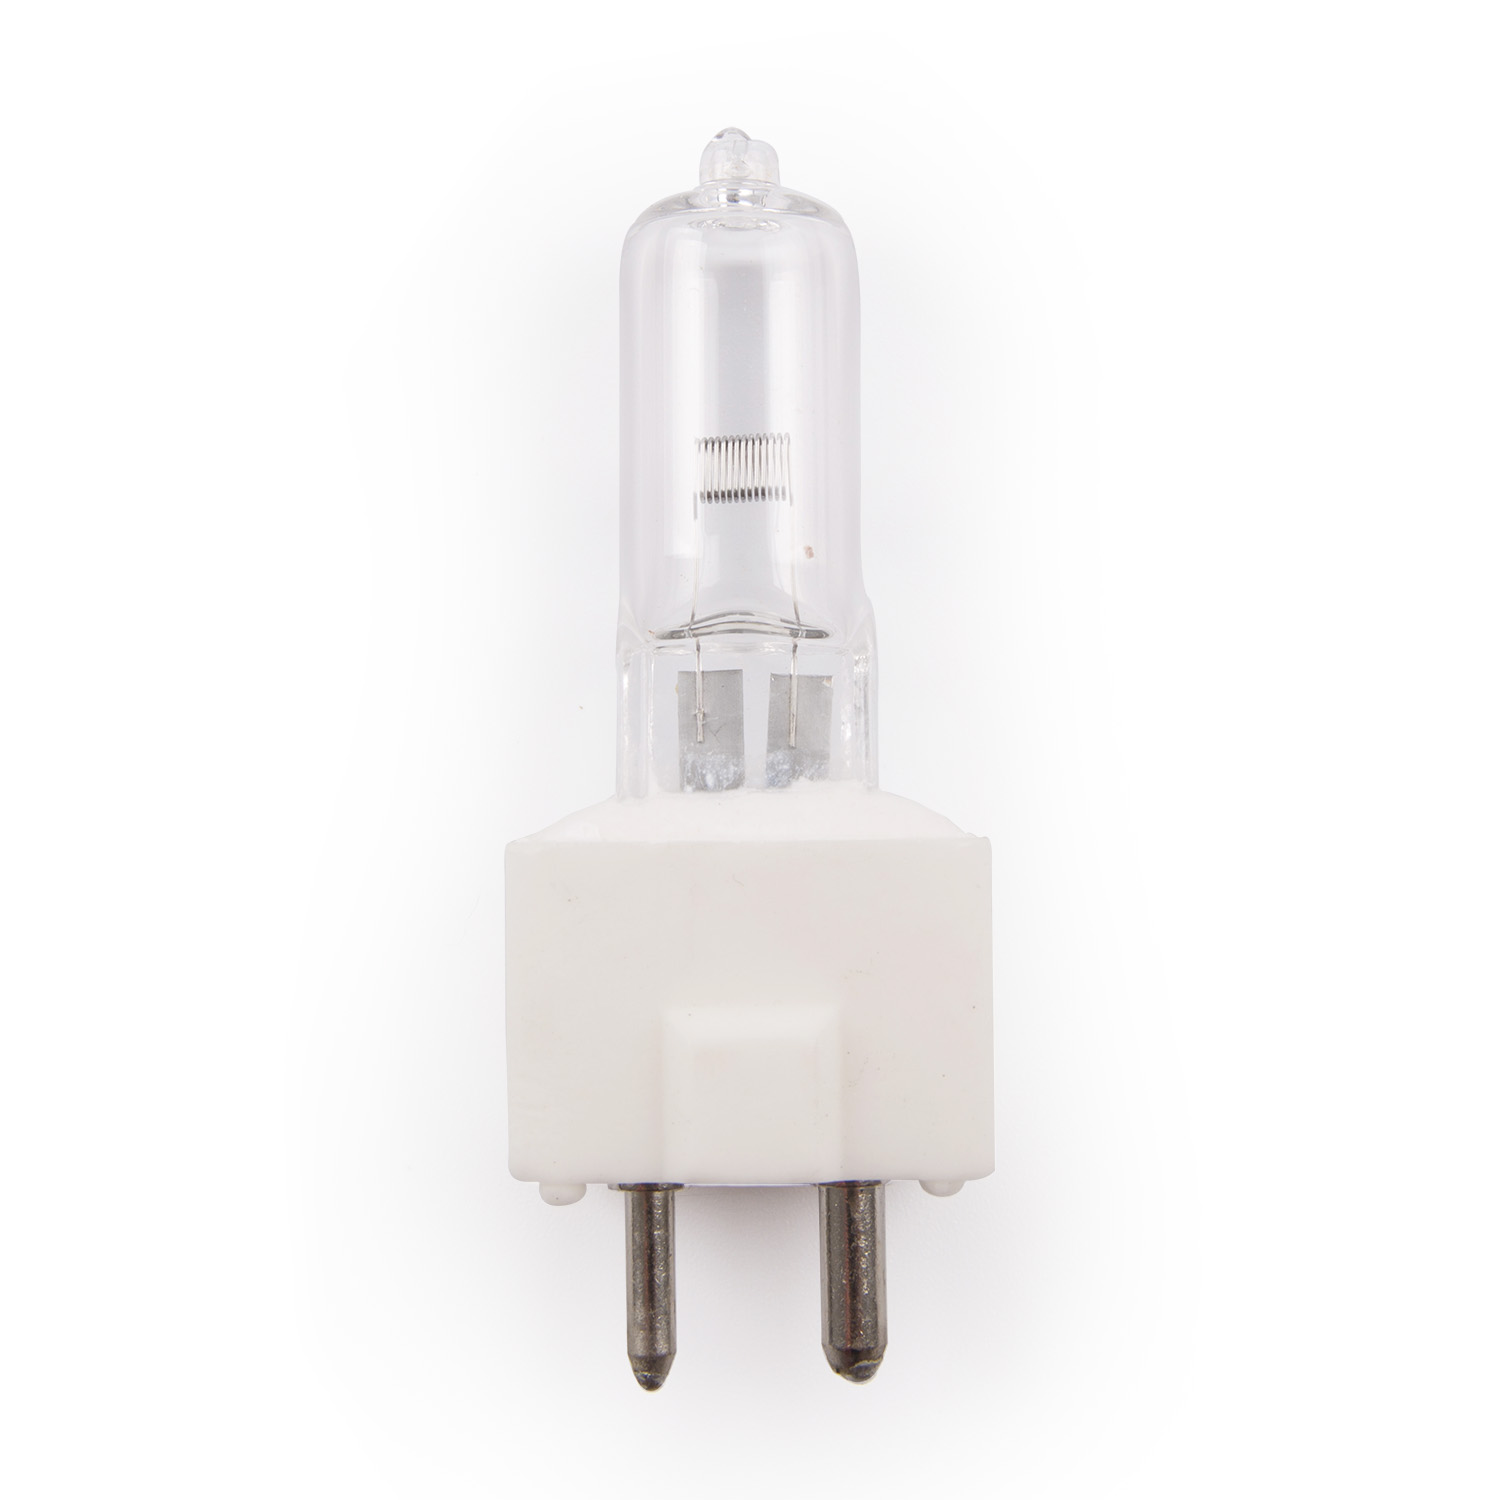 LT03061 6.8V 45W GY9.5 ceramic base OT light bulb 